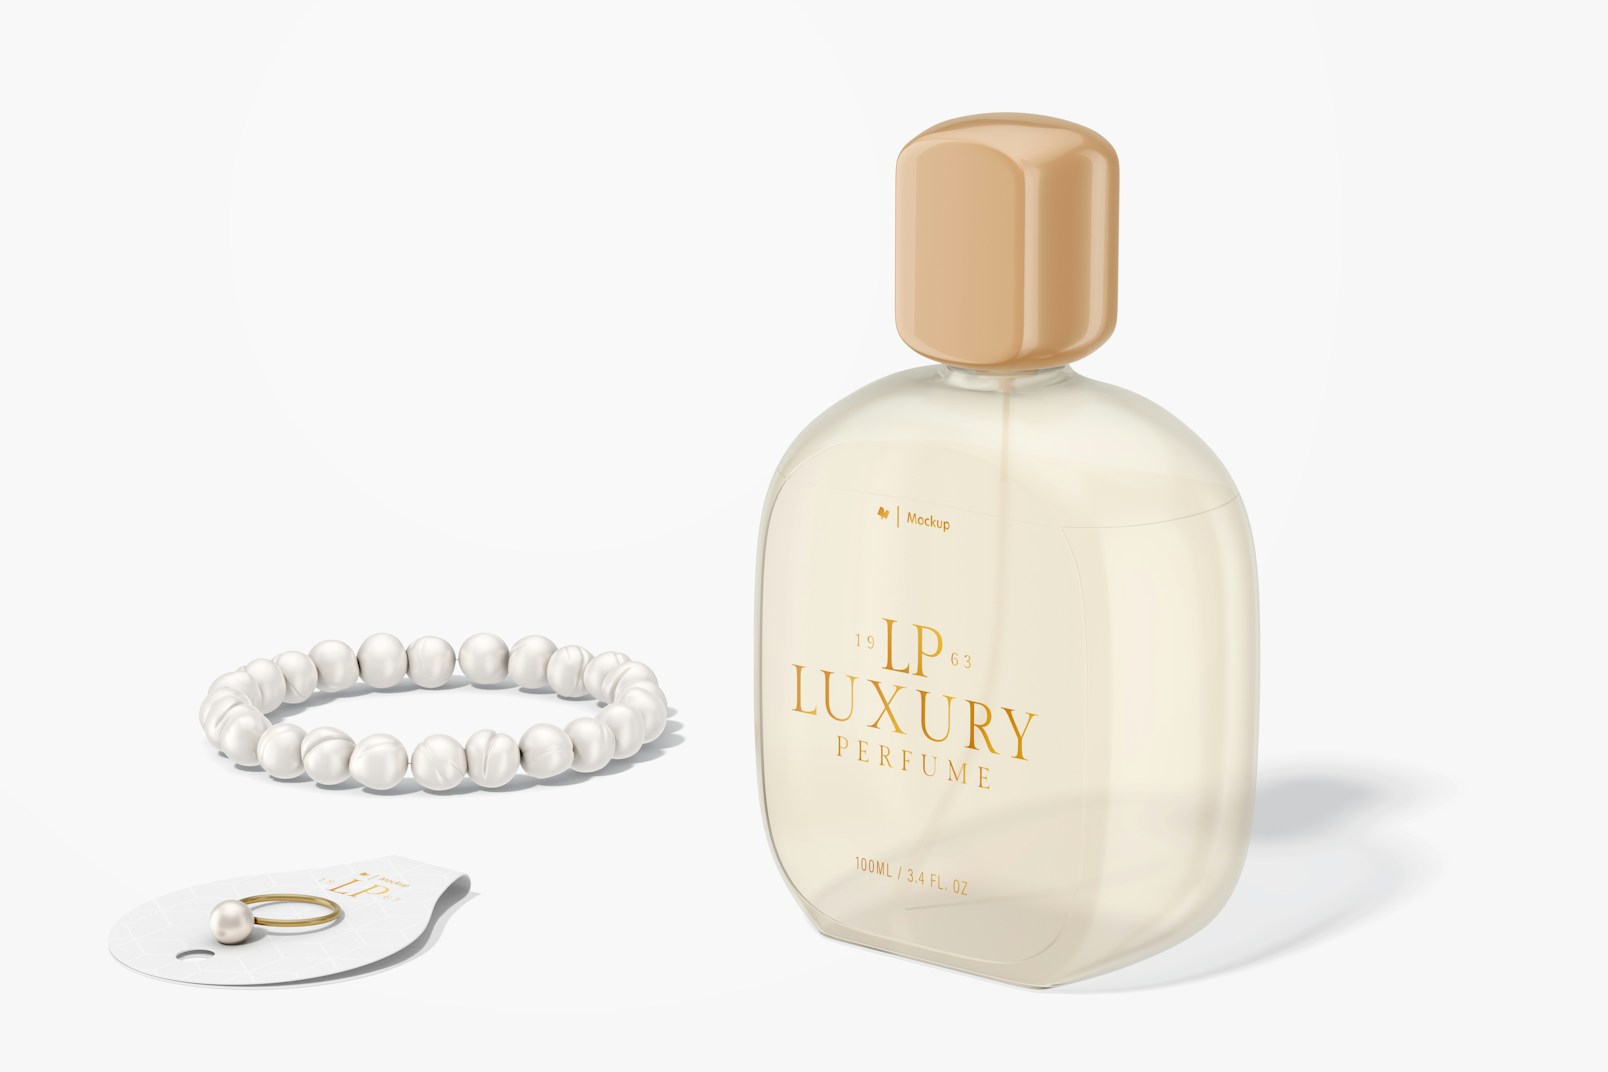 Oval Luxury Perfume Bottle Mockup, Left View